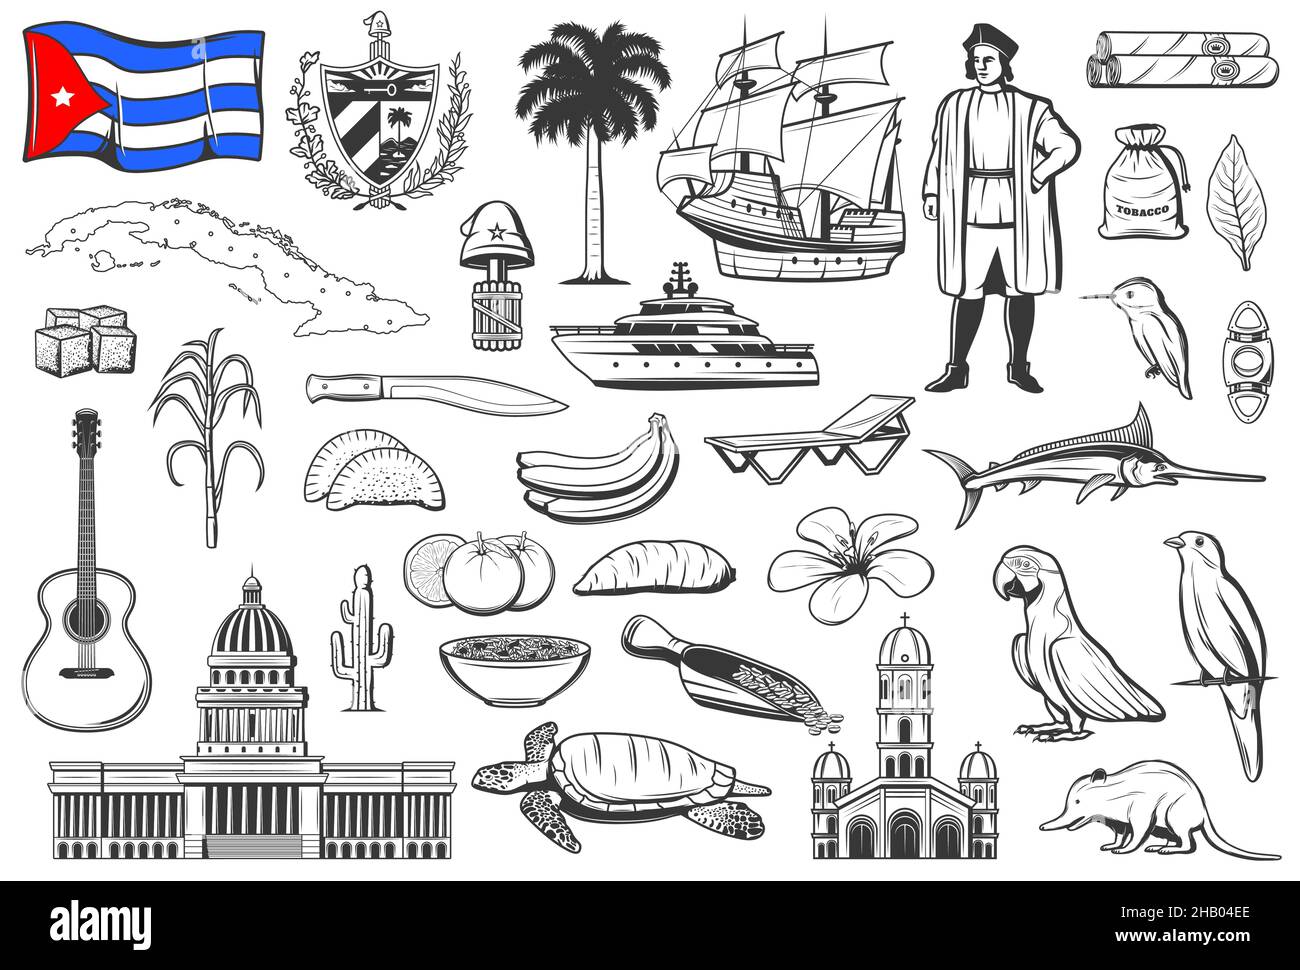 Cuba symboles nationaux, cuisine et la nature gravé icônes ensemble.Drapeau cubain et armoiries, bâtiment du capitole et carte de l'île, navire de Christophe Colomb, Illustration de Vecteur